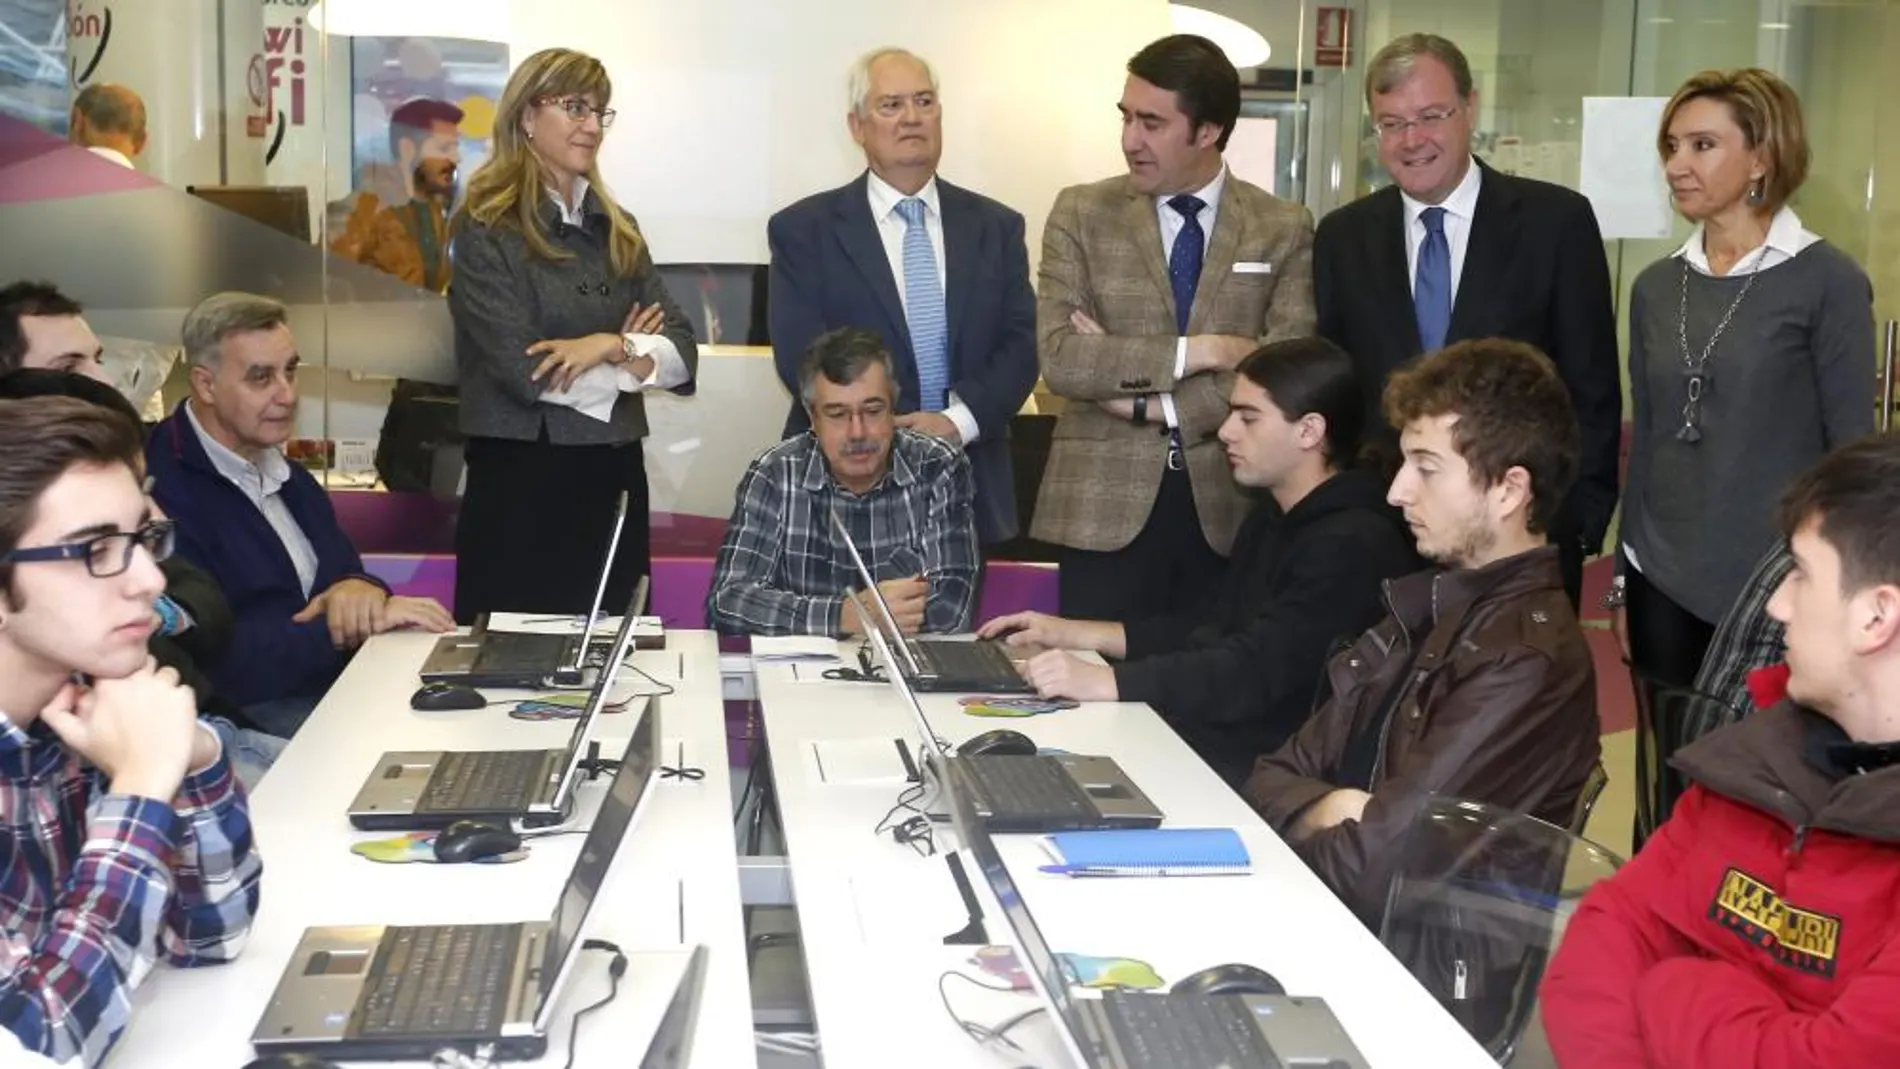 El consejero Suárez-Quiñones y el alcalde Antonio Silván visitan el Espacio CyL Digital de León